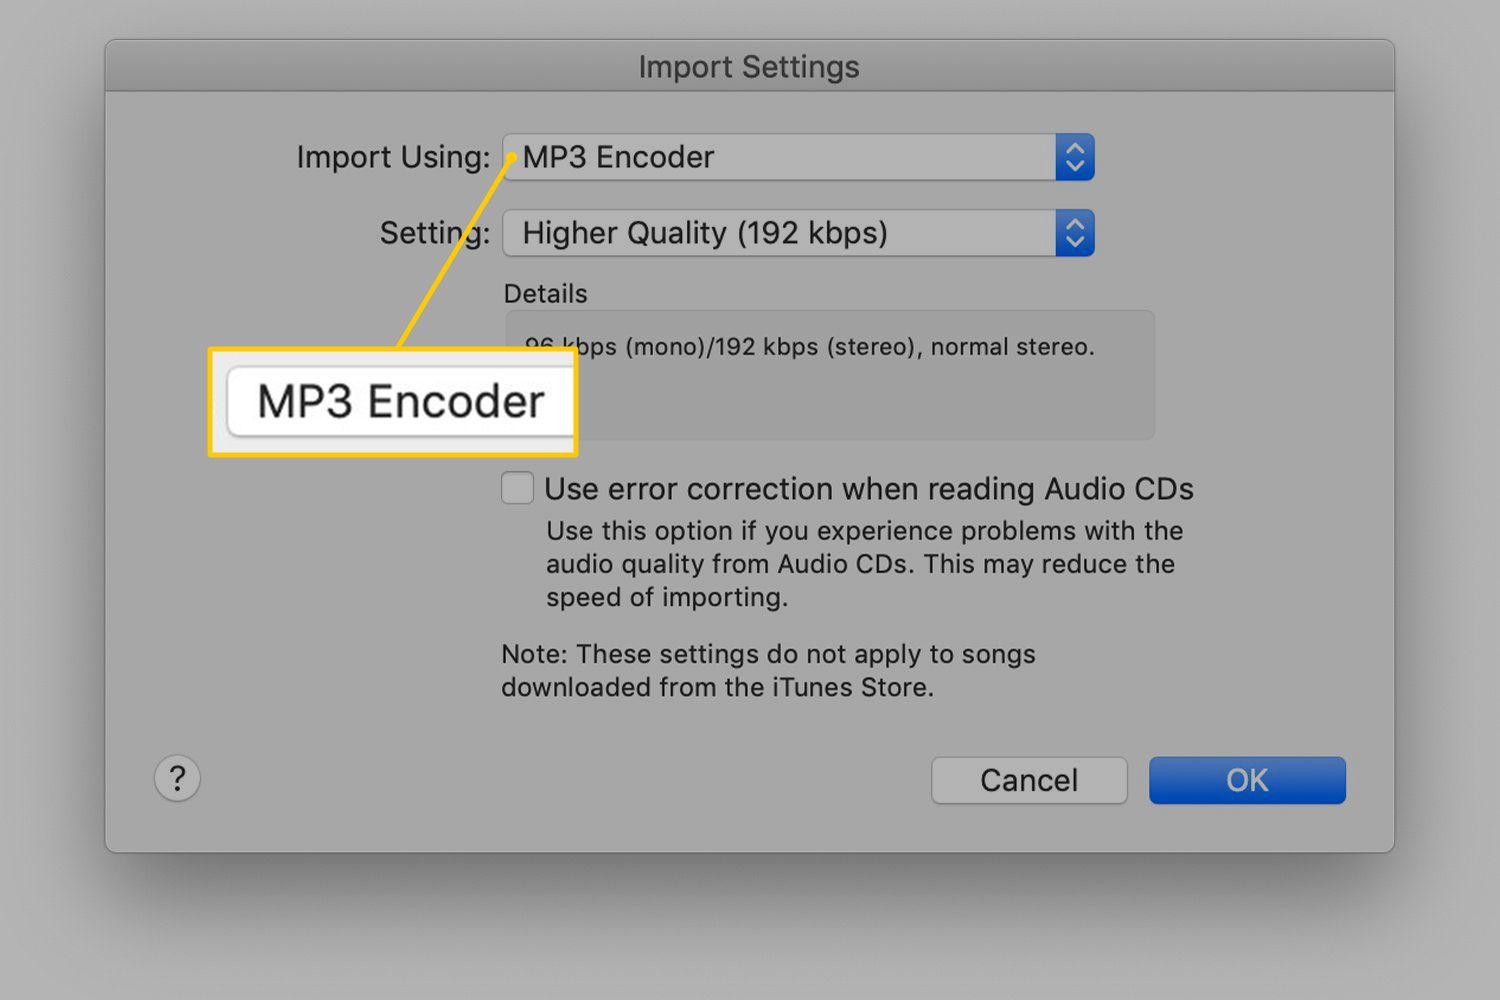 MP3 Encoder в настройках импорта iTunes